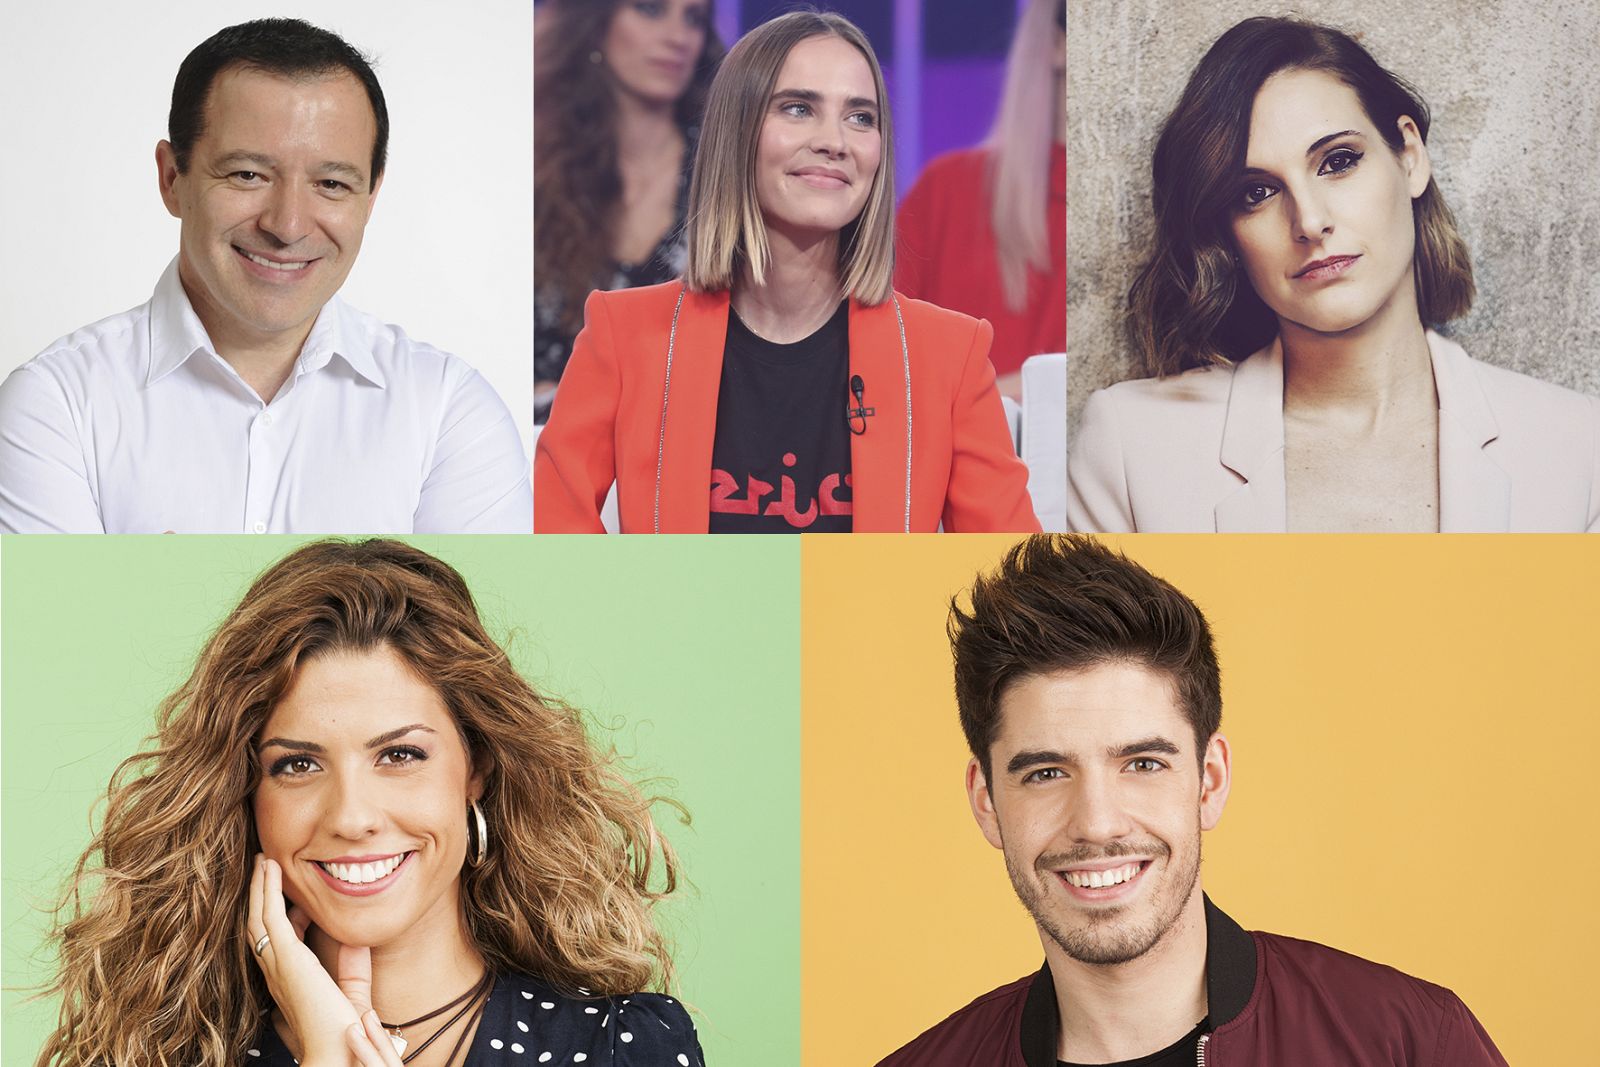 Este es el jurado de España para Eurovisión 2018